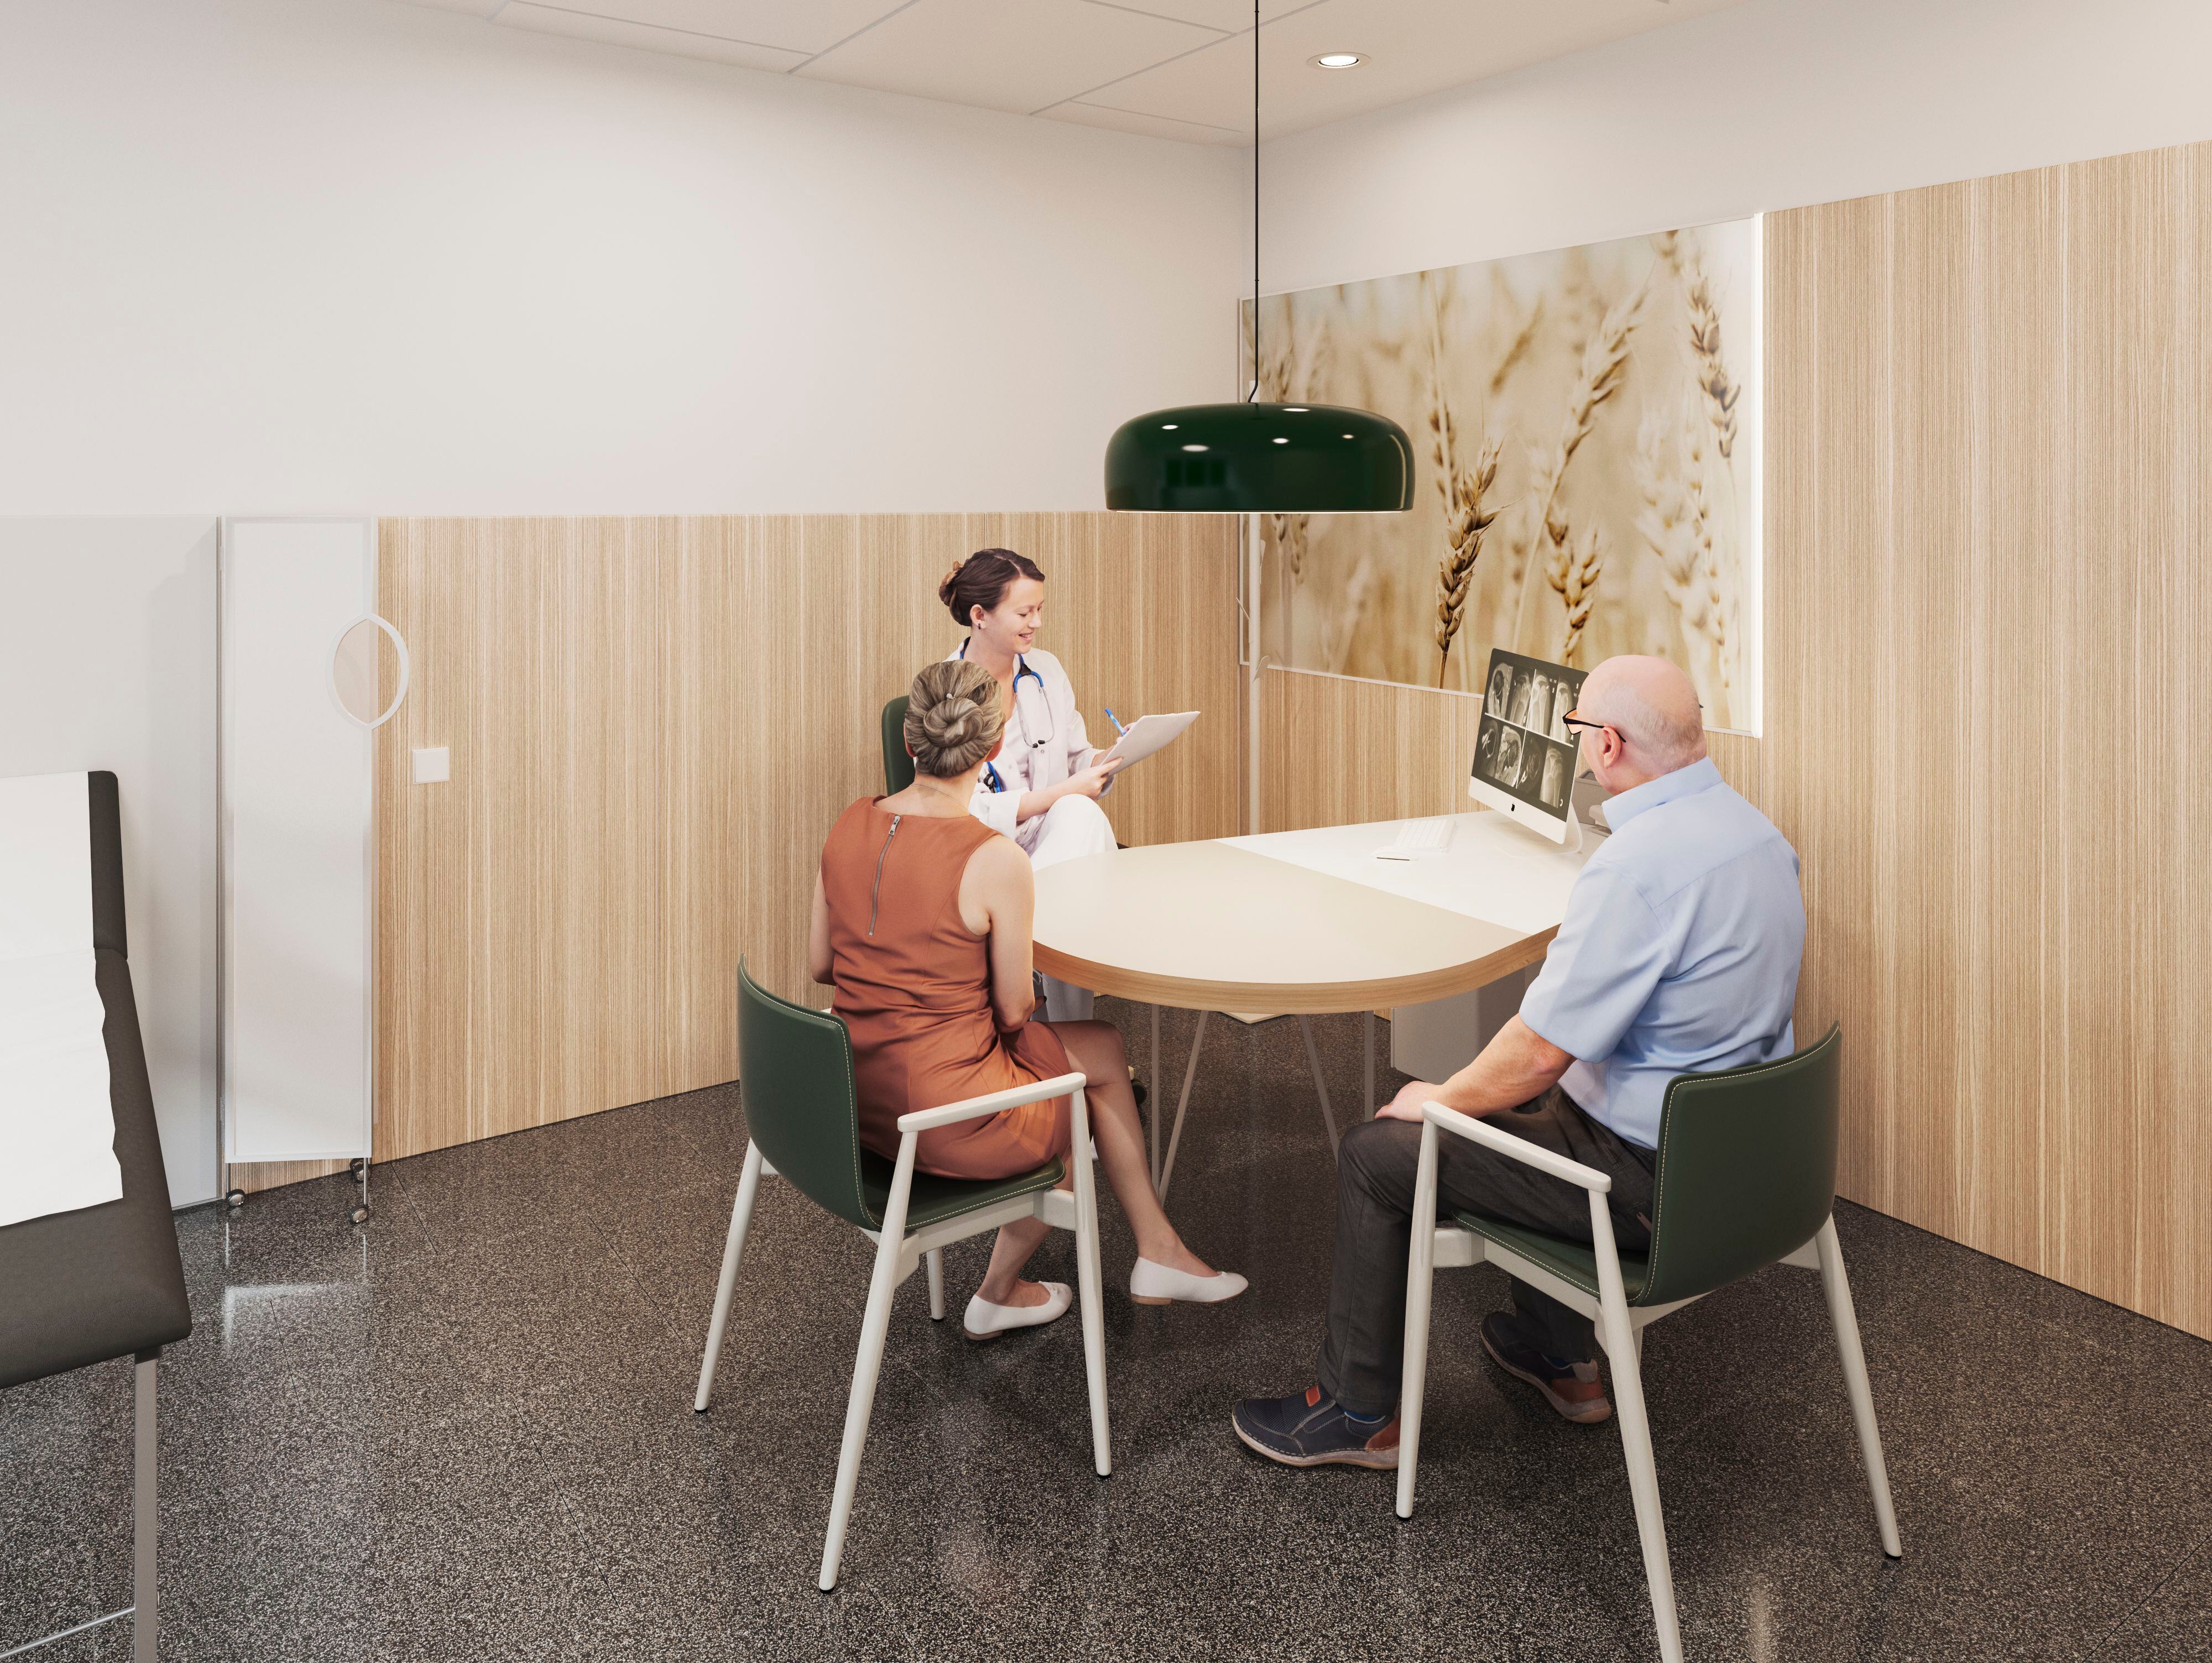 Recreación de una de las mesas diseñadas por PMMT para una consulta externa en un hospital.